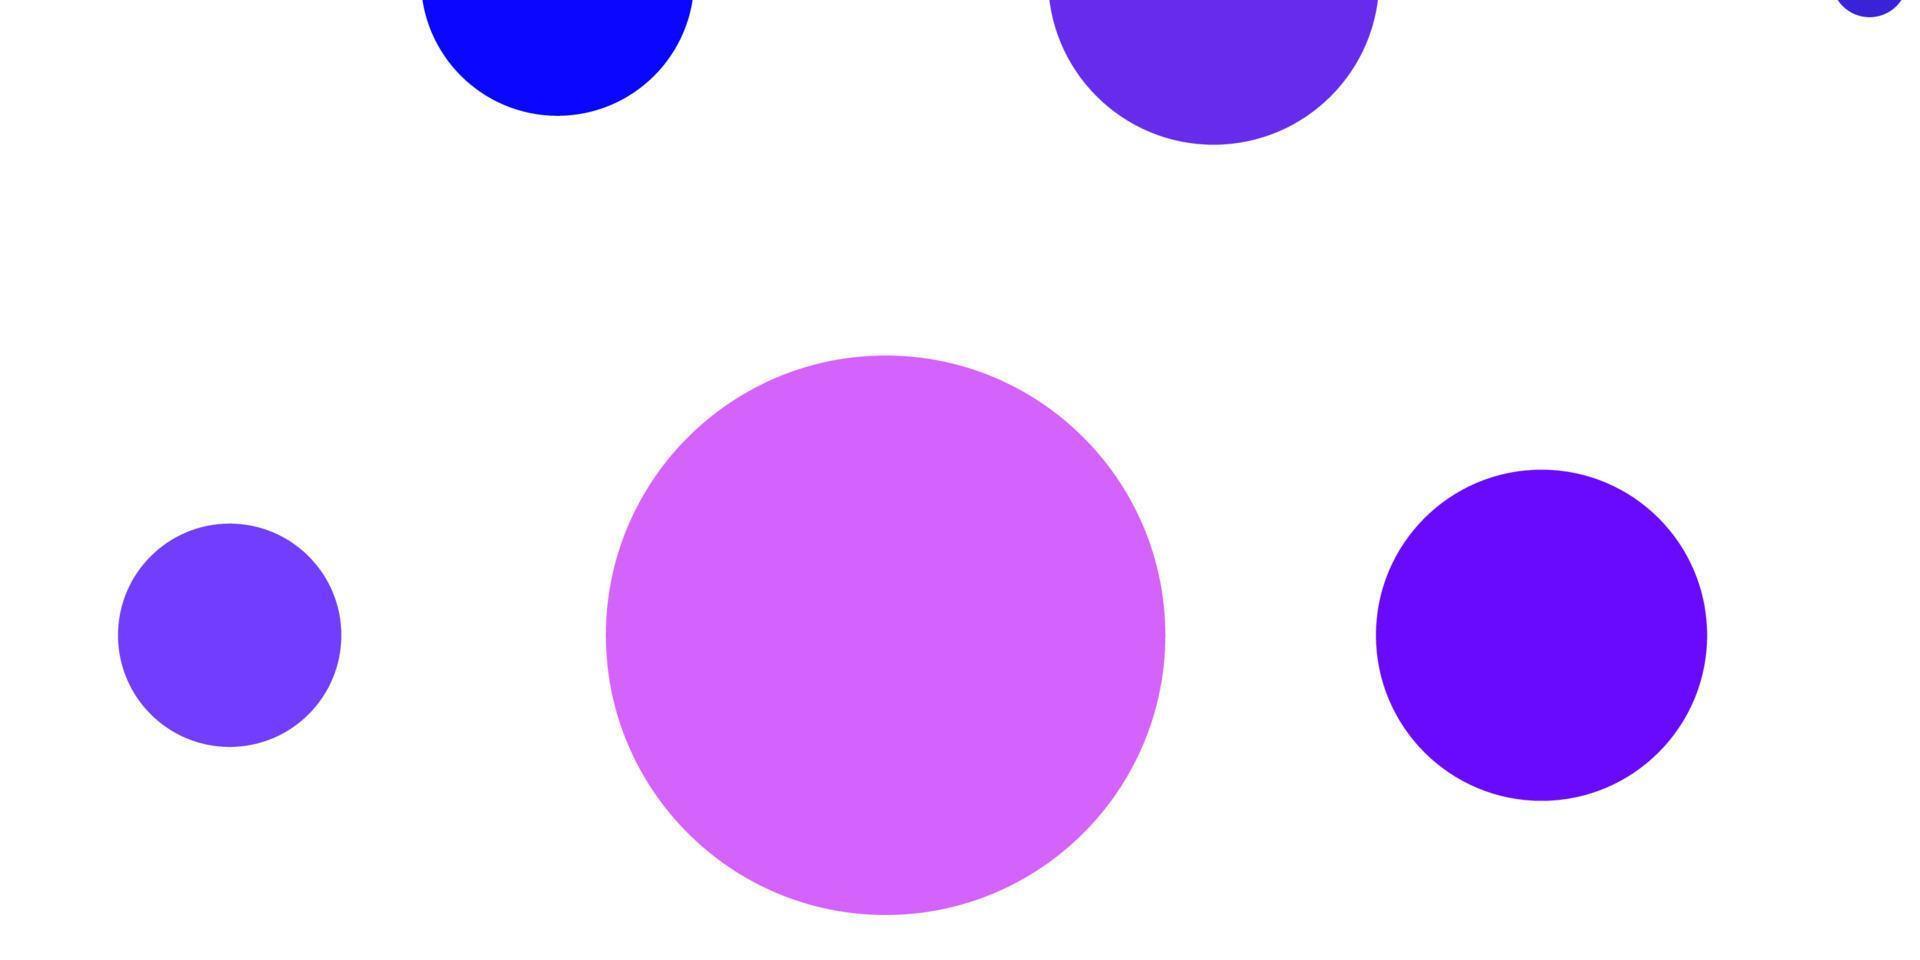 Fondo de vector rosa claro, azul con círculos.